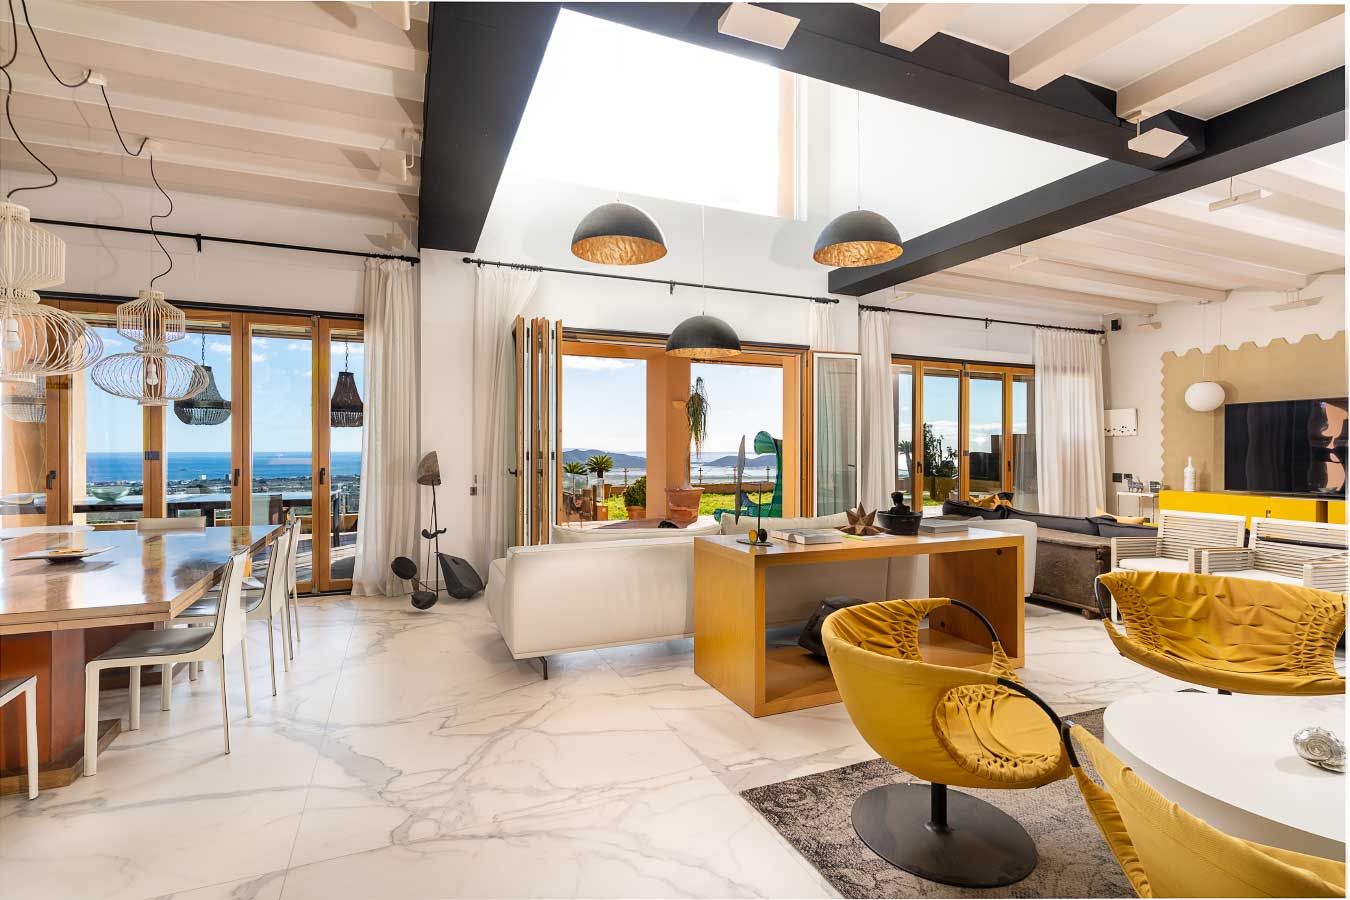 Amplio y espacioso salón con techos altos y amplios ventanales que ofrecen vistas al mar del sur en una villa de lujo en Ibiza